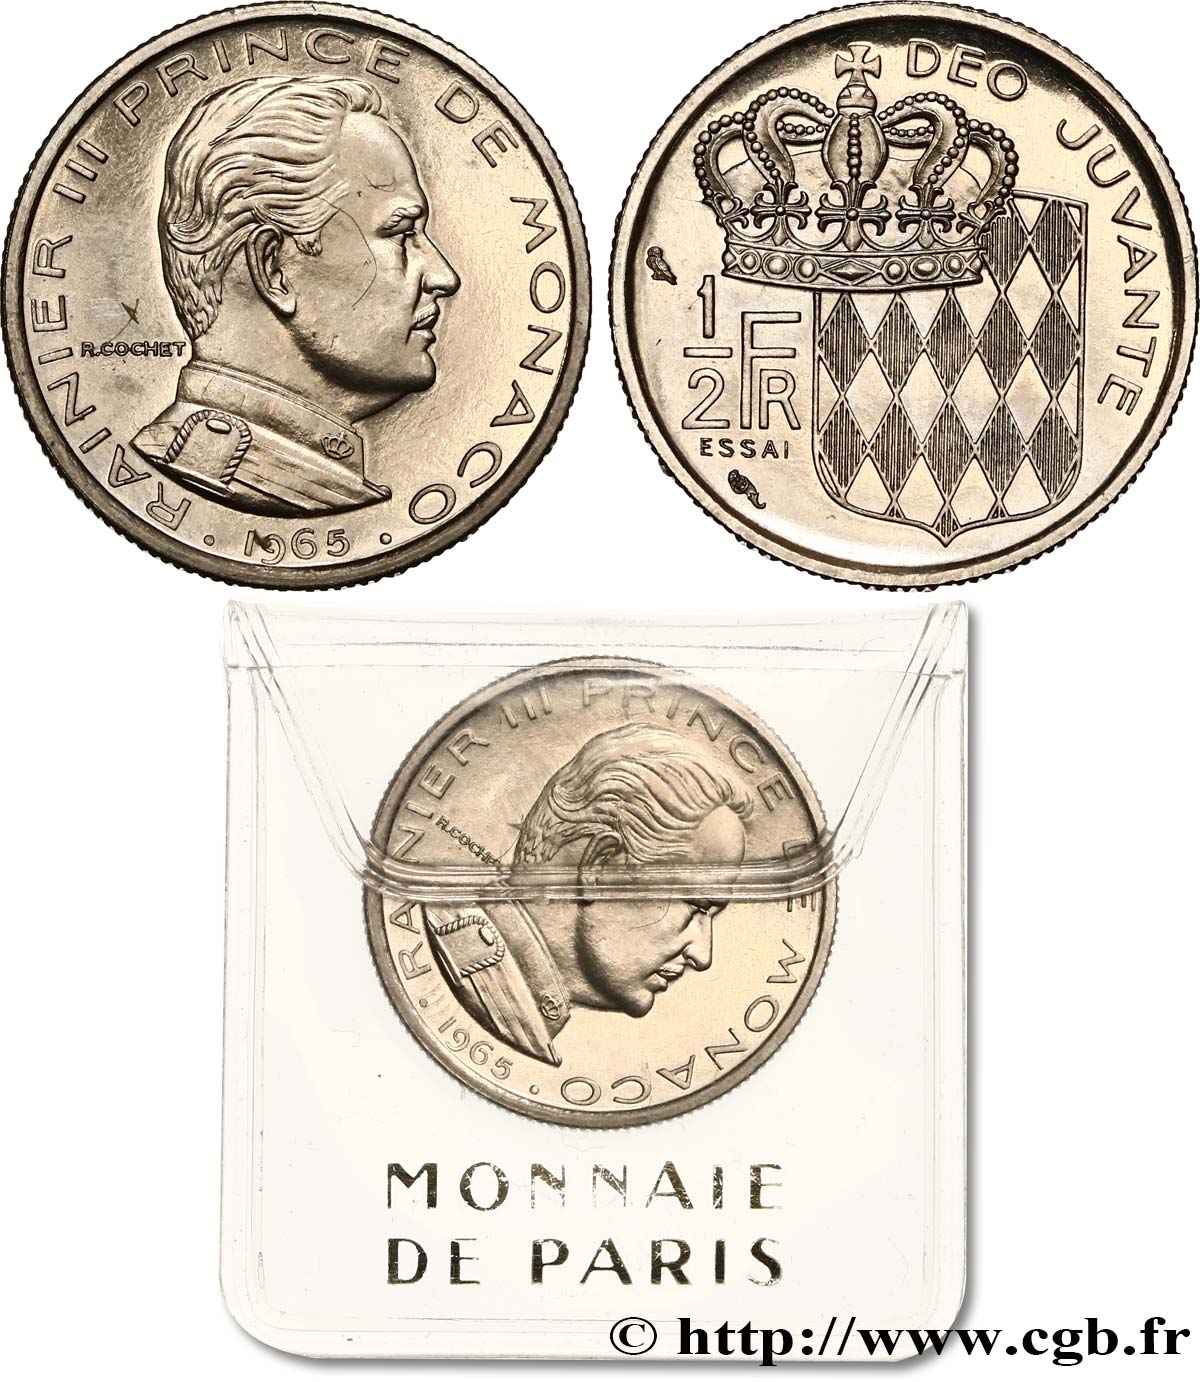 MONACO - PRINCIPAUTÉ DE MONACO - RAINIER III Essai de 1/2 Franc 1965 Paris SPL 